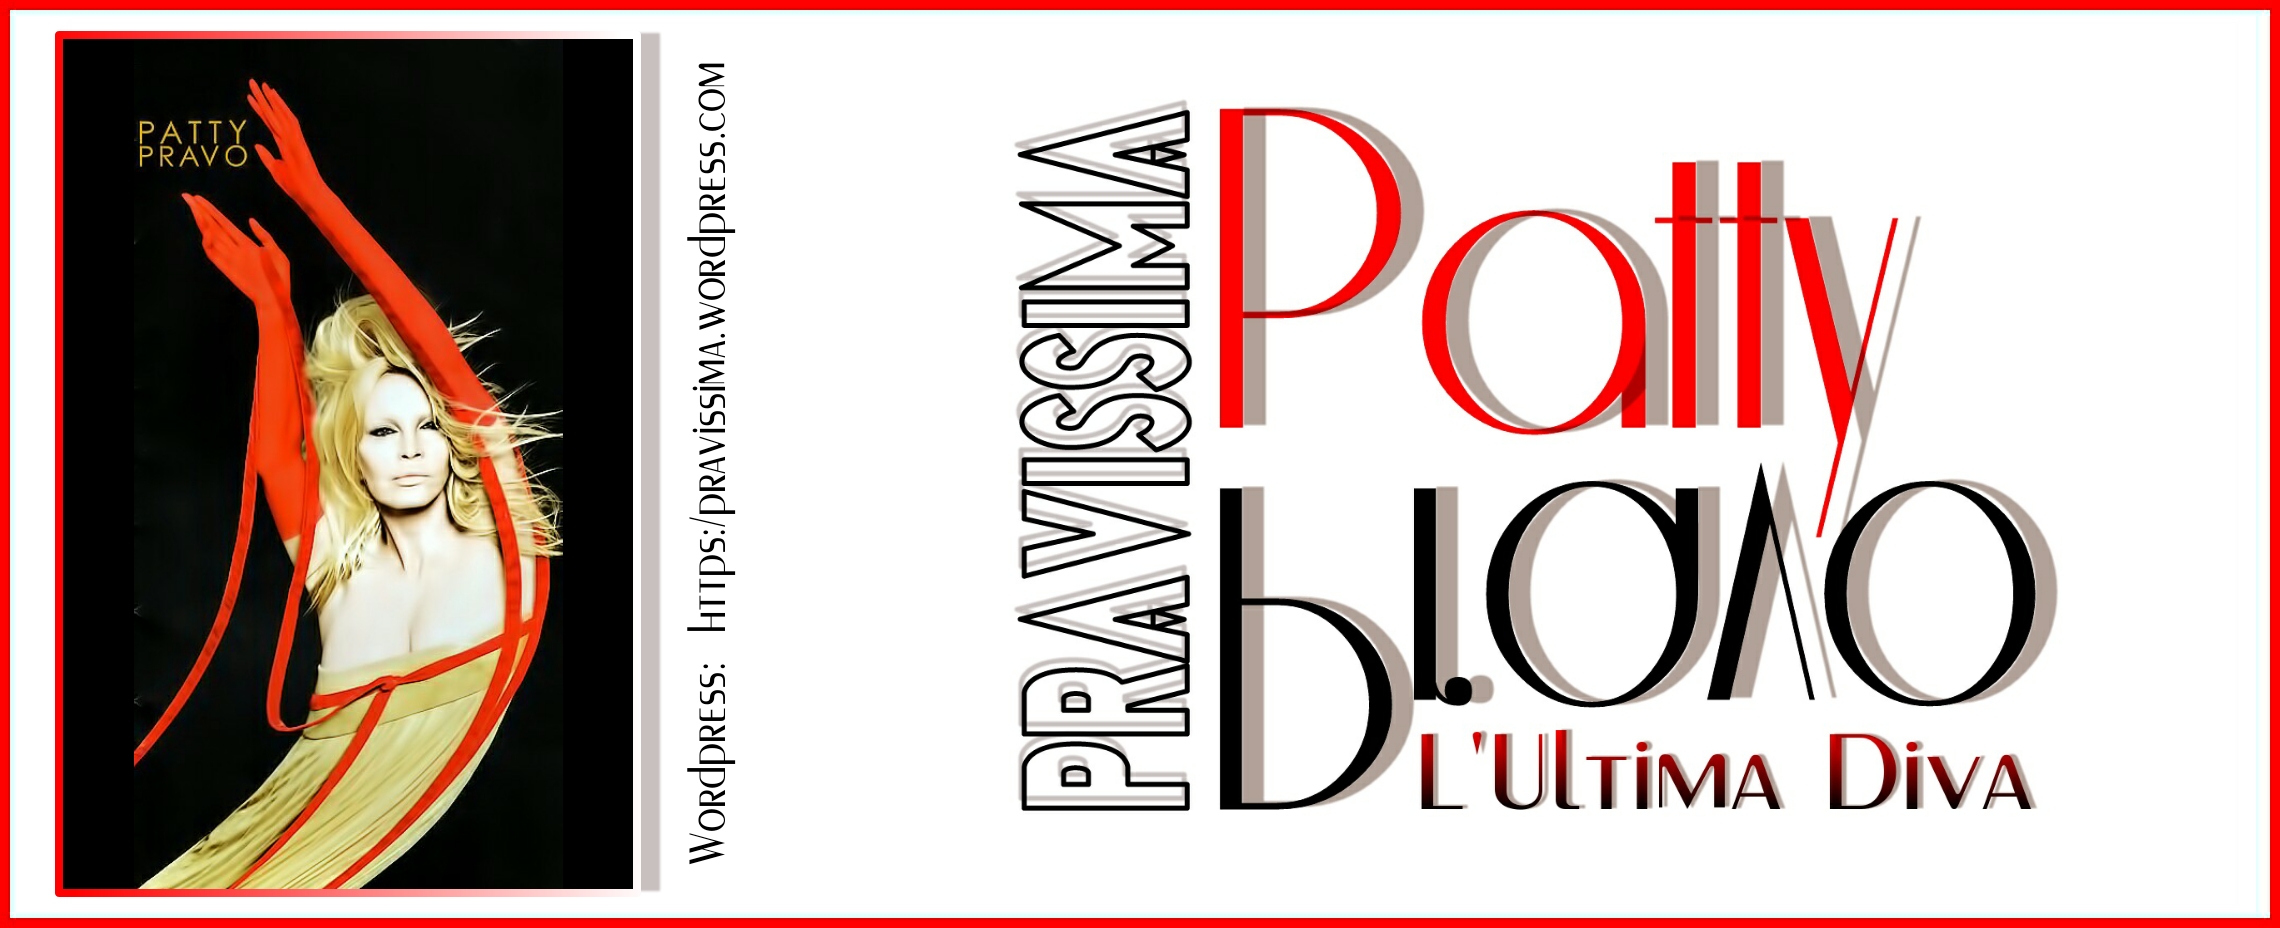 PRAVISSIMA – Patty Pravo – L'Ultima Diva – Wordpress